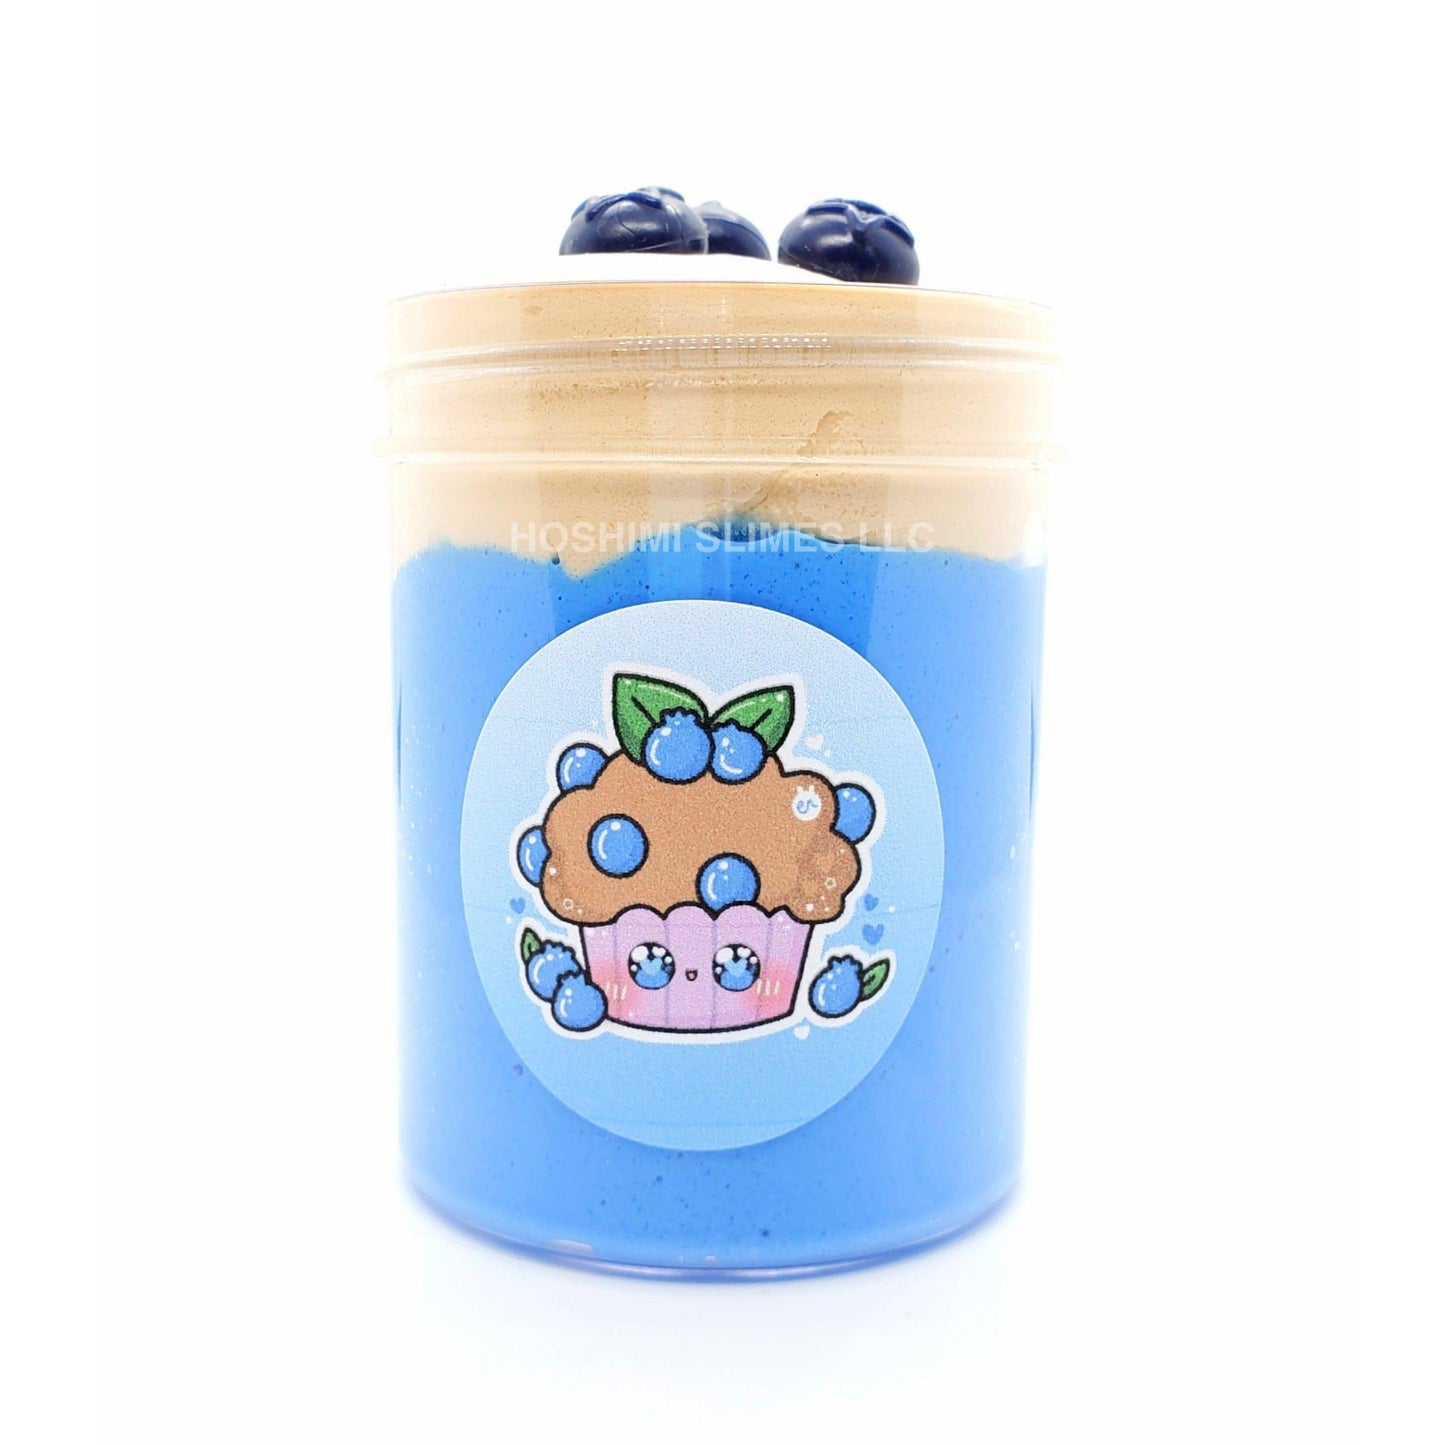 Blueberry Muffin Clay Cap Handmade Butter Slime 4oz Slime by Hoshimi Slimes LLC | Hoshimi Slimes LLC